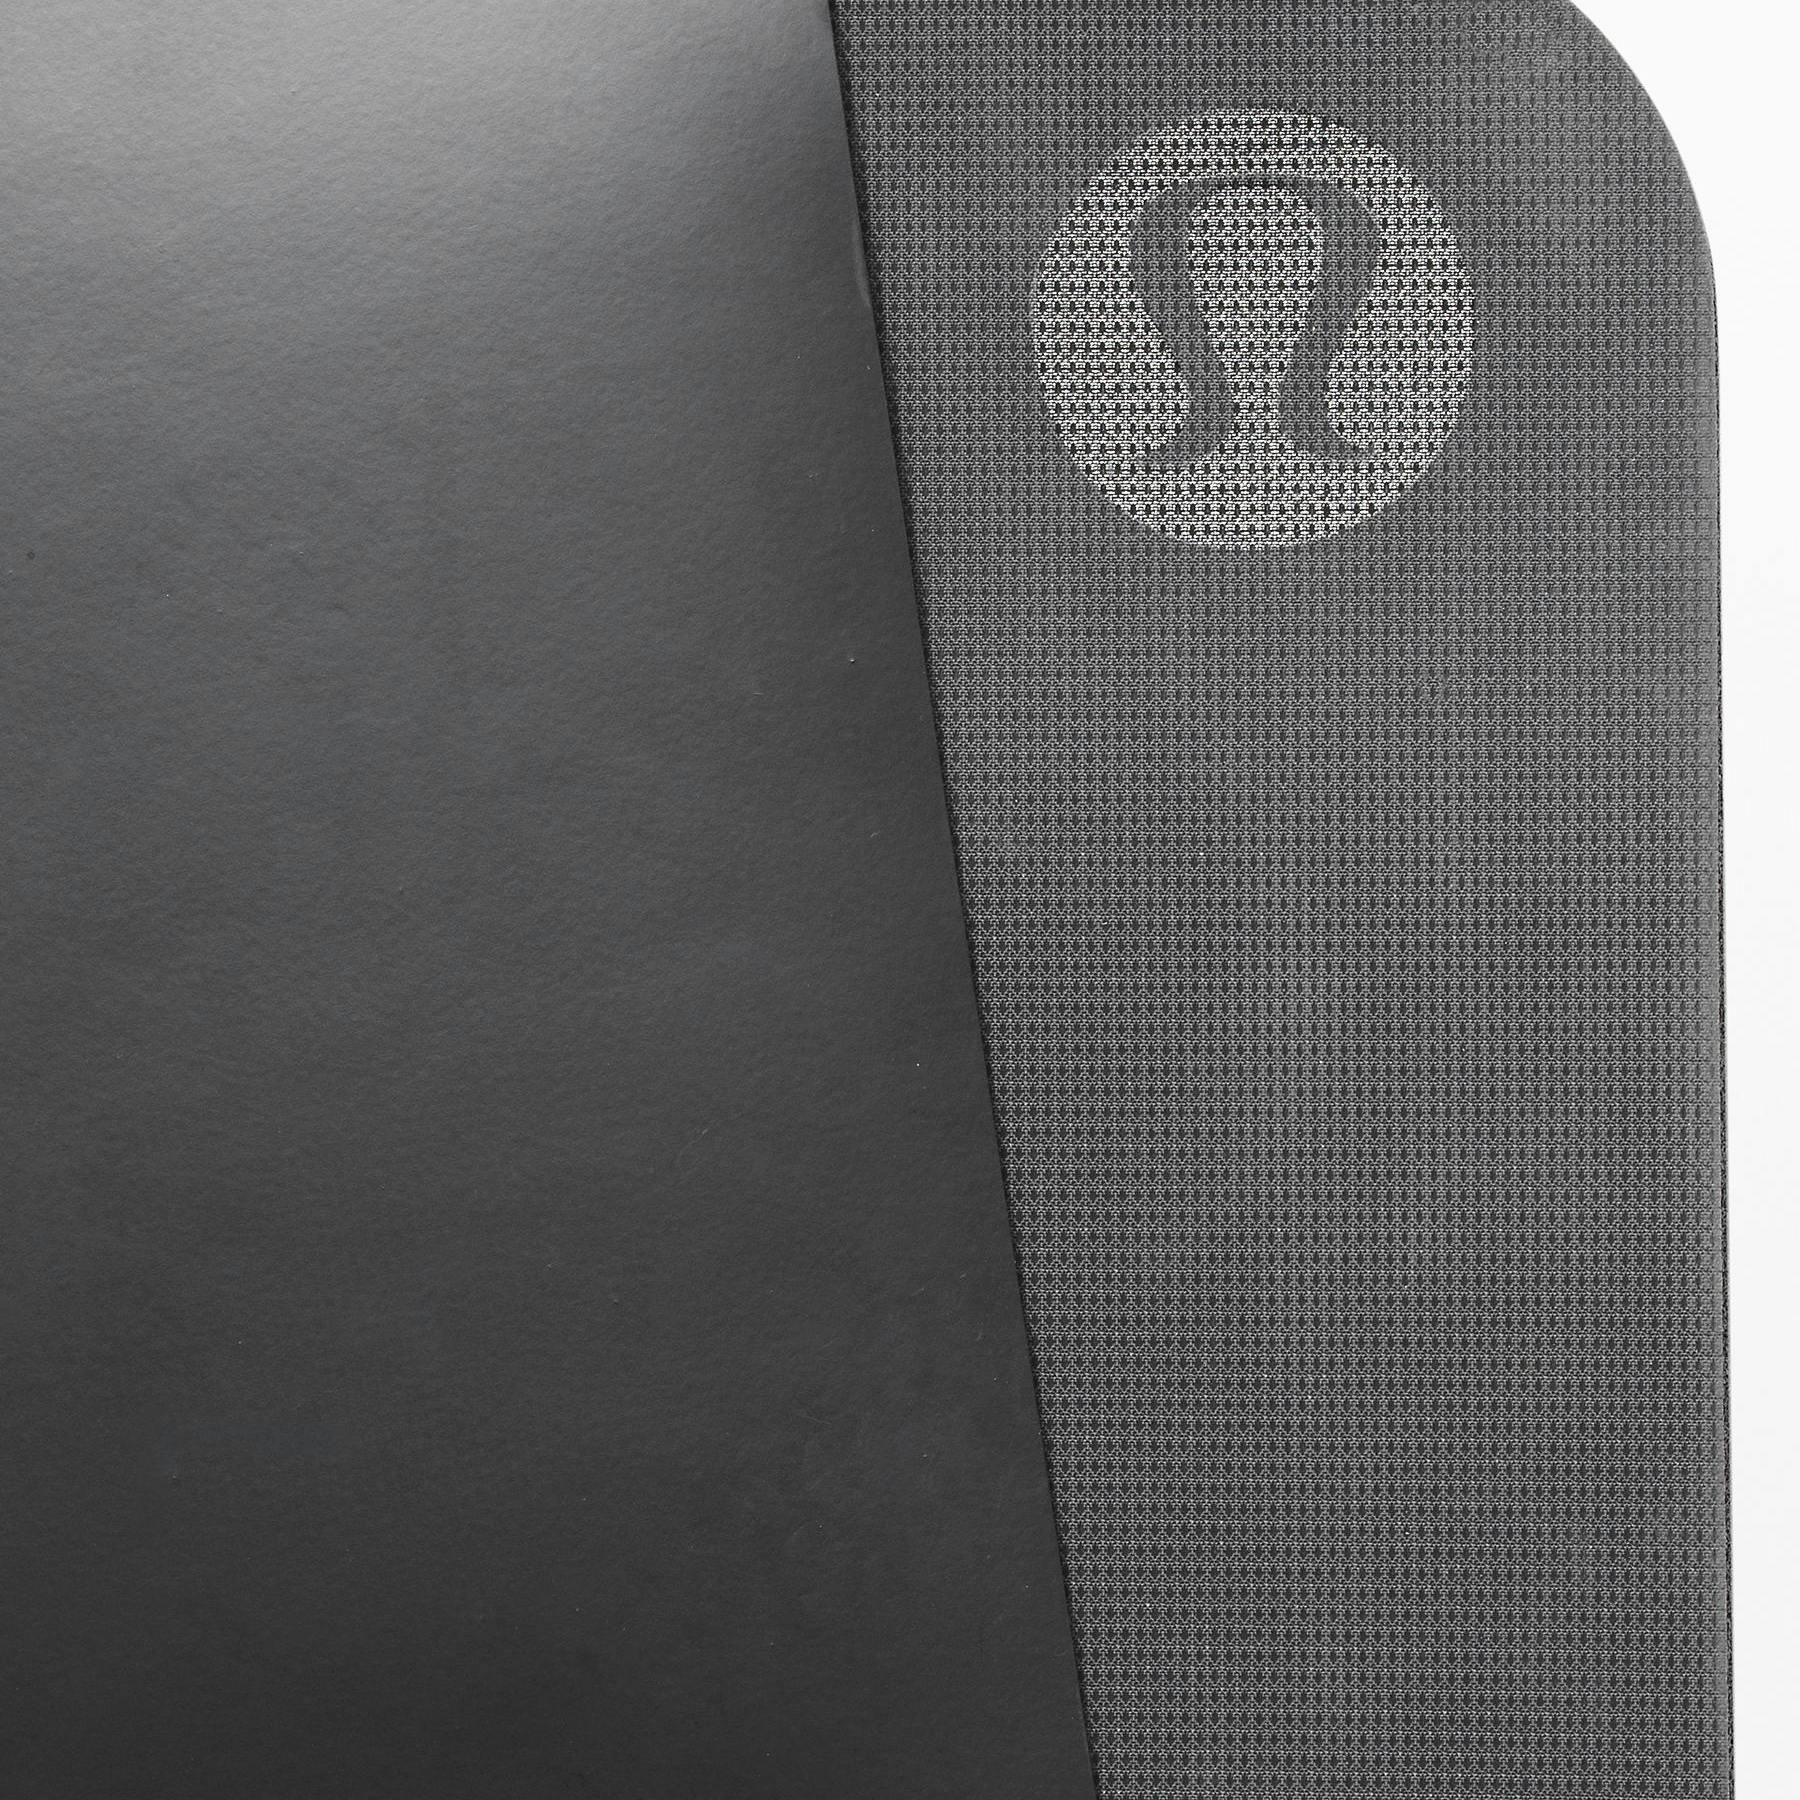 The Reversible Yoga Mat 5mm